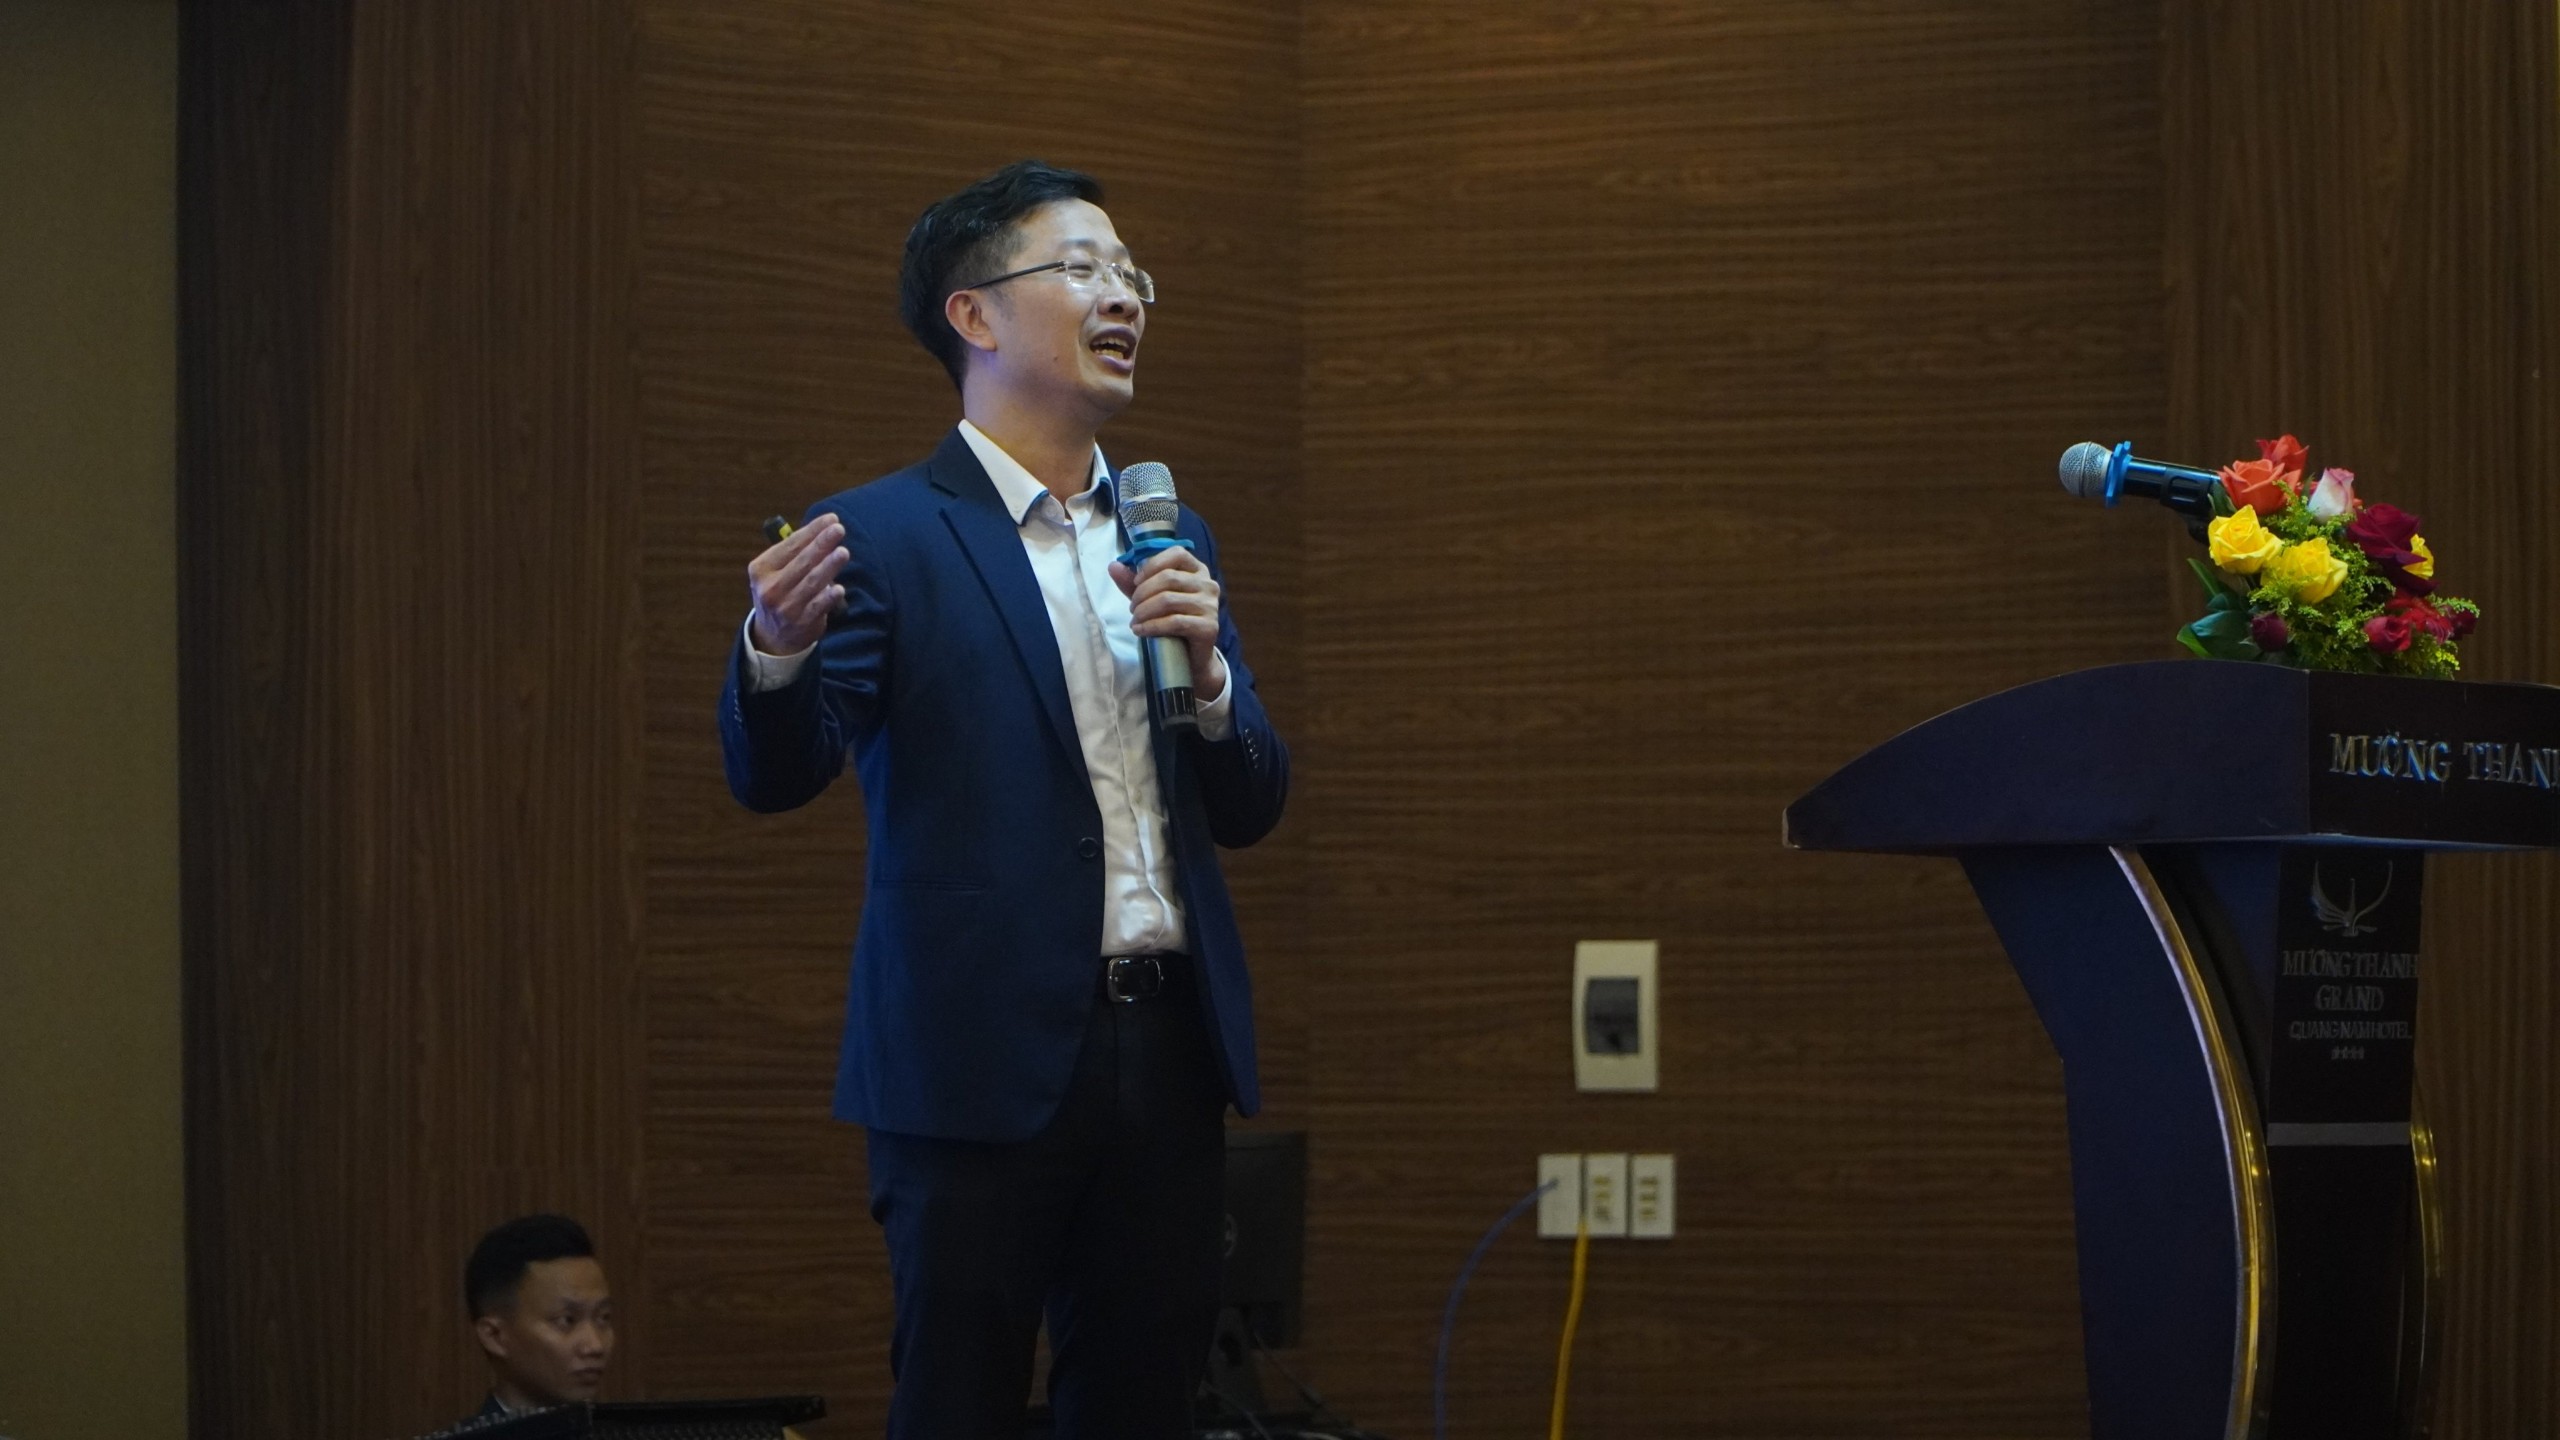 Ông Đỗ Hoàng Hải – Giám đốc Công ty Cổ phần Công nghệ Wicom, Chuyên gia chuyển đổi số chia sẻ tại diễn đàn